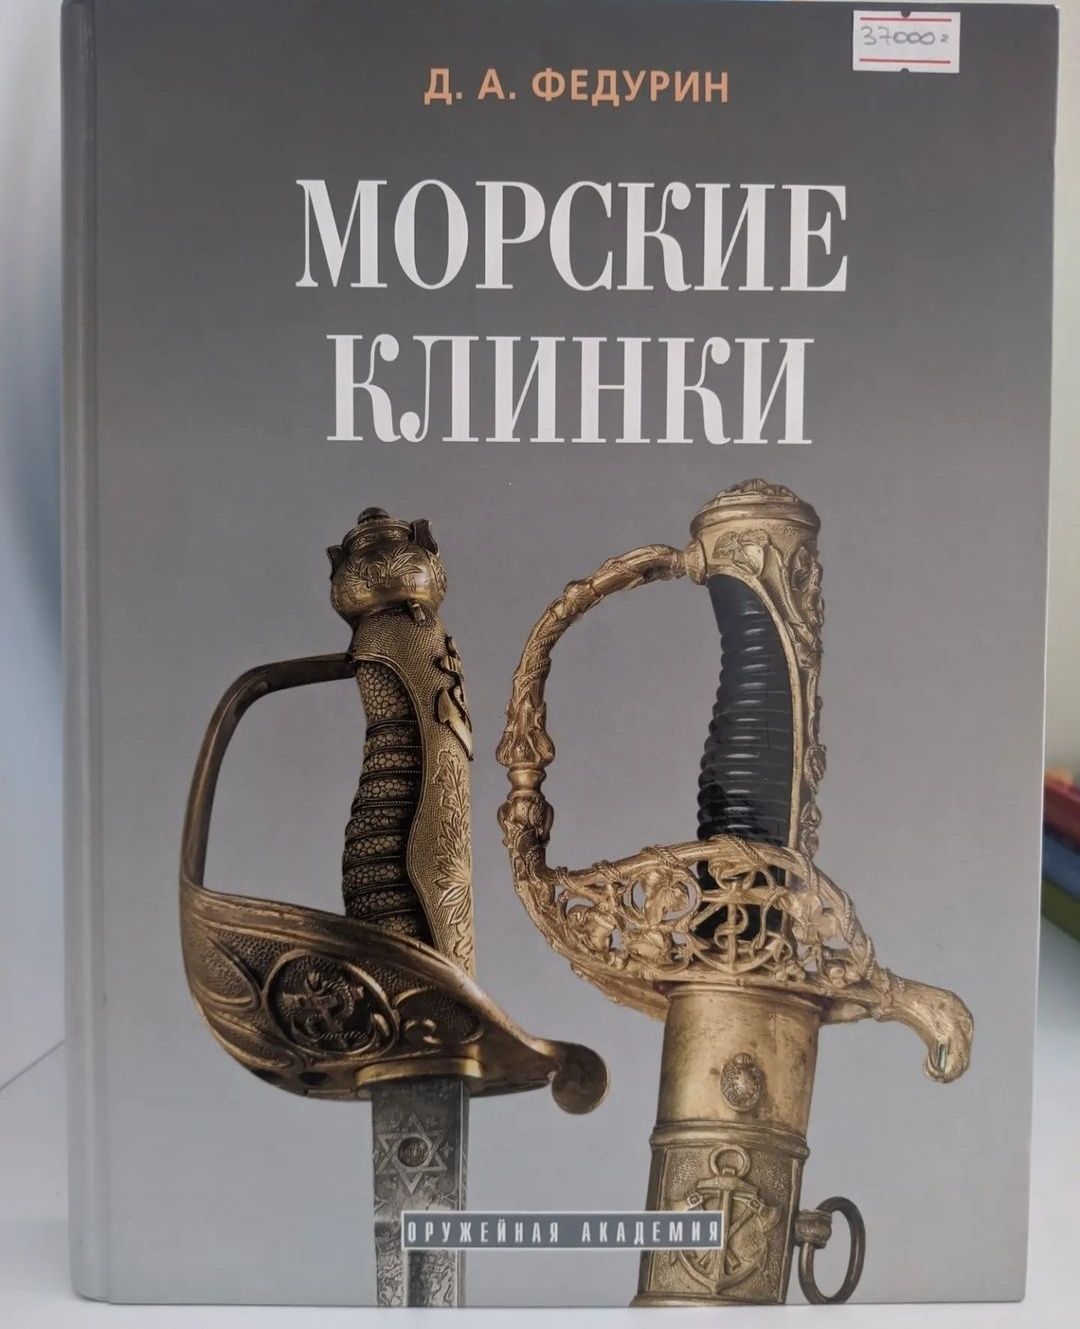 Коллекционная книга "Морские клинки" 37000